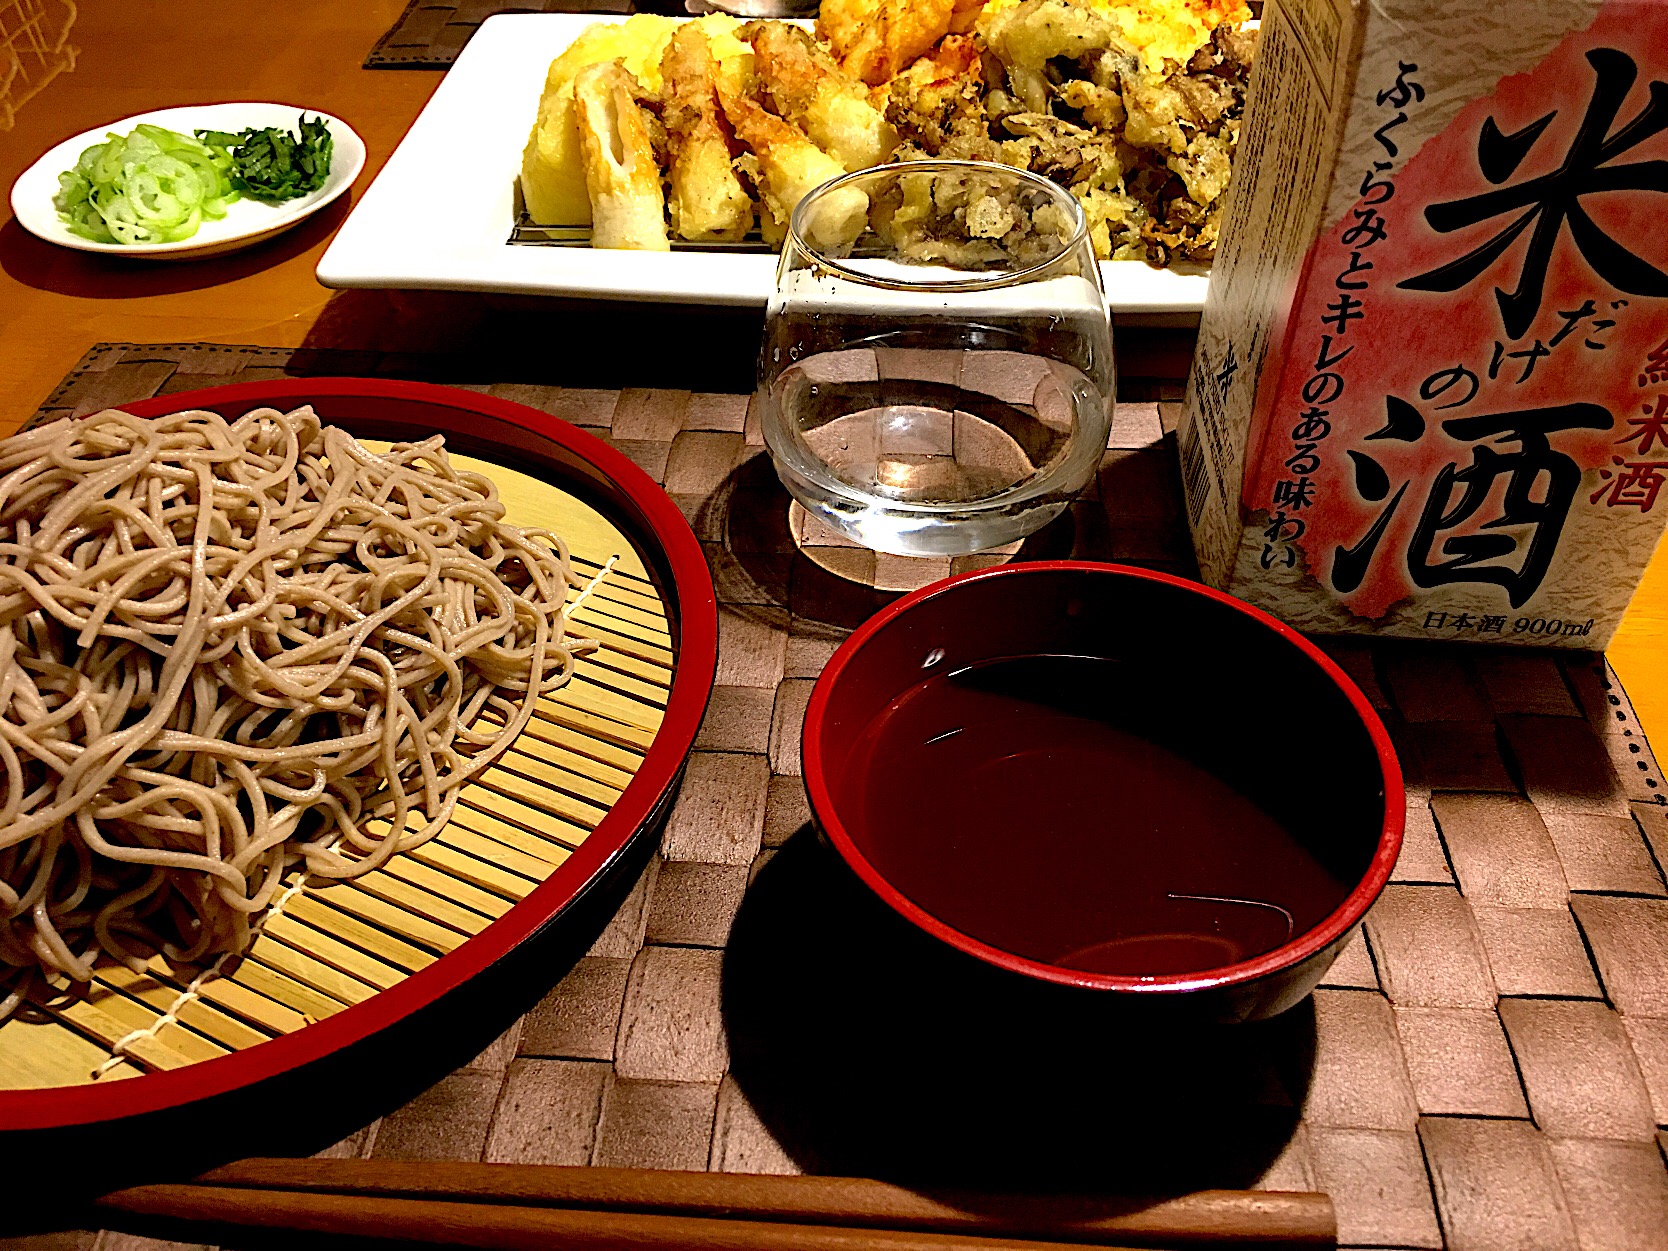 沢の鶴 『米だけの酒』をいただきました  美味しいお酒と一緒にいただきたかったのが 新そば。天ぷらは有りもの食材でしたが我が家で天ぷらをするときにはマストのじゃがいもももれなく参加。ゆっくりとまったりと一杯やりながらいい週末の晩御飯でした。  お酒はすっきり飲みやすいお味でした。